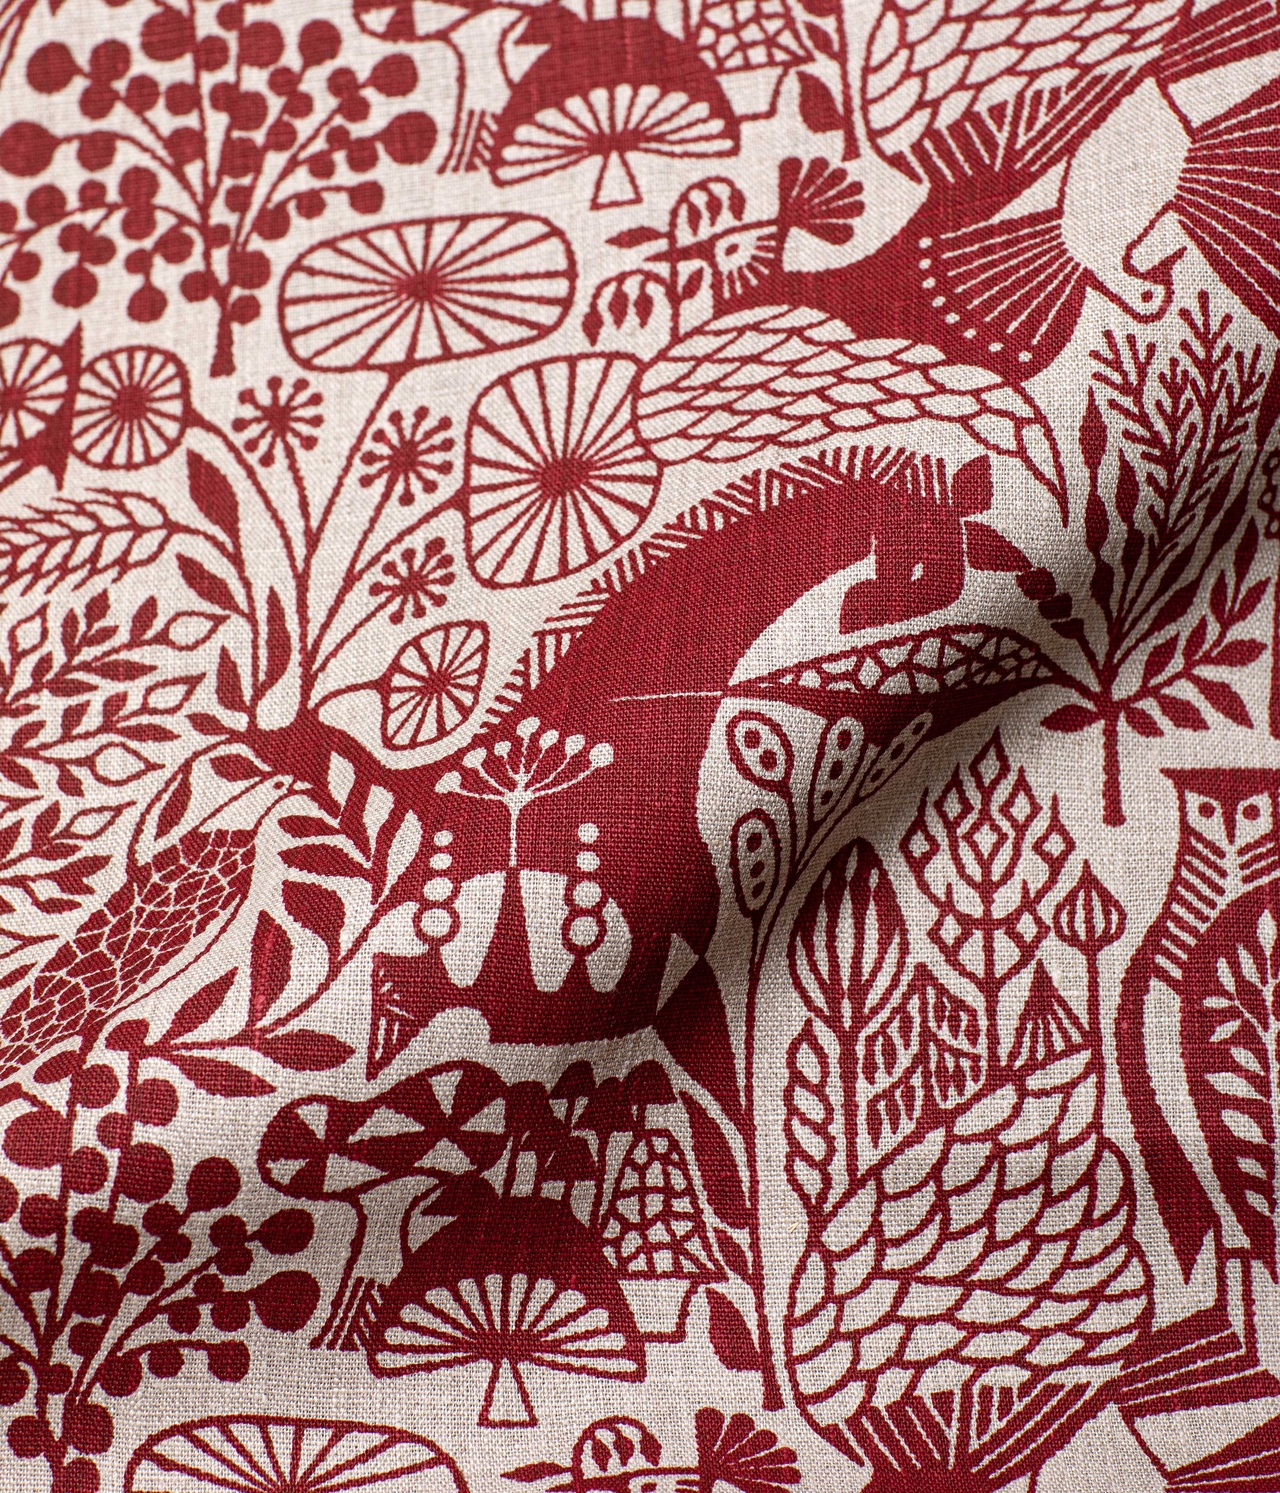 Sample Linen fabric "MORI NO SEIREI" Red